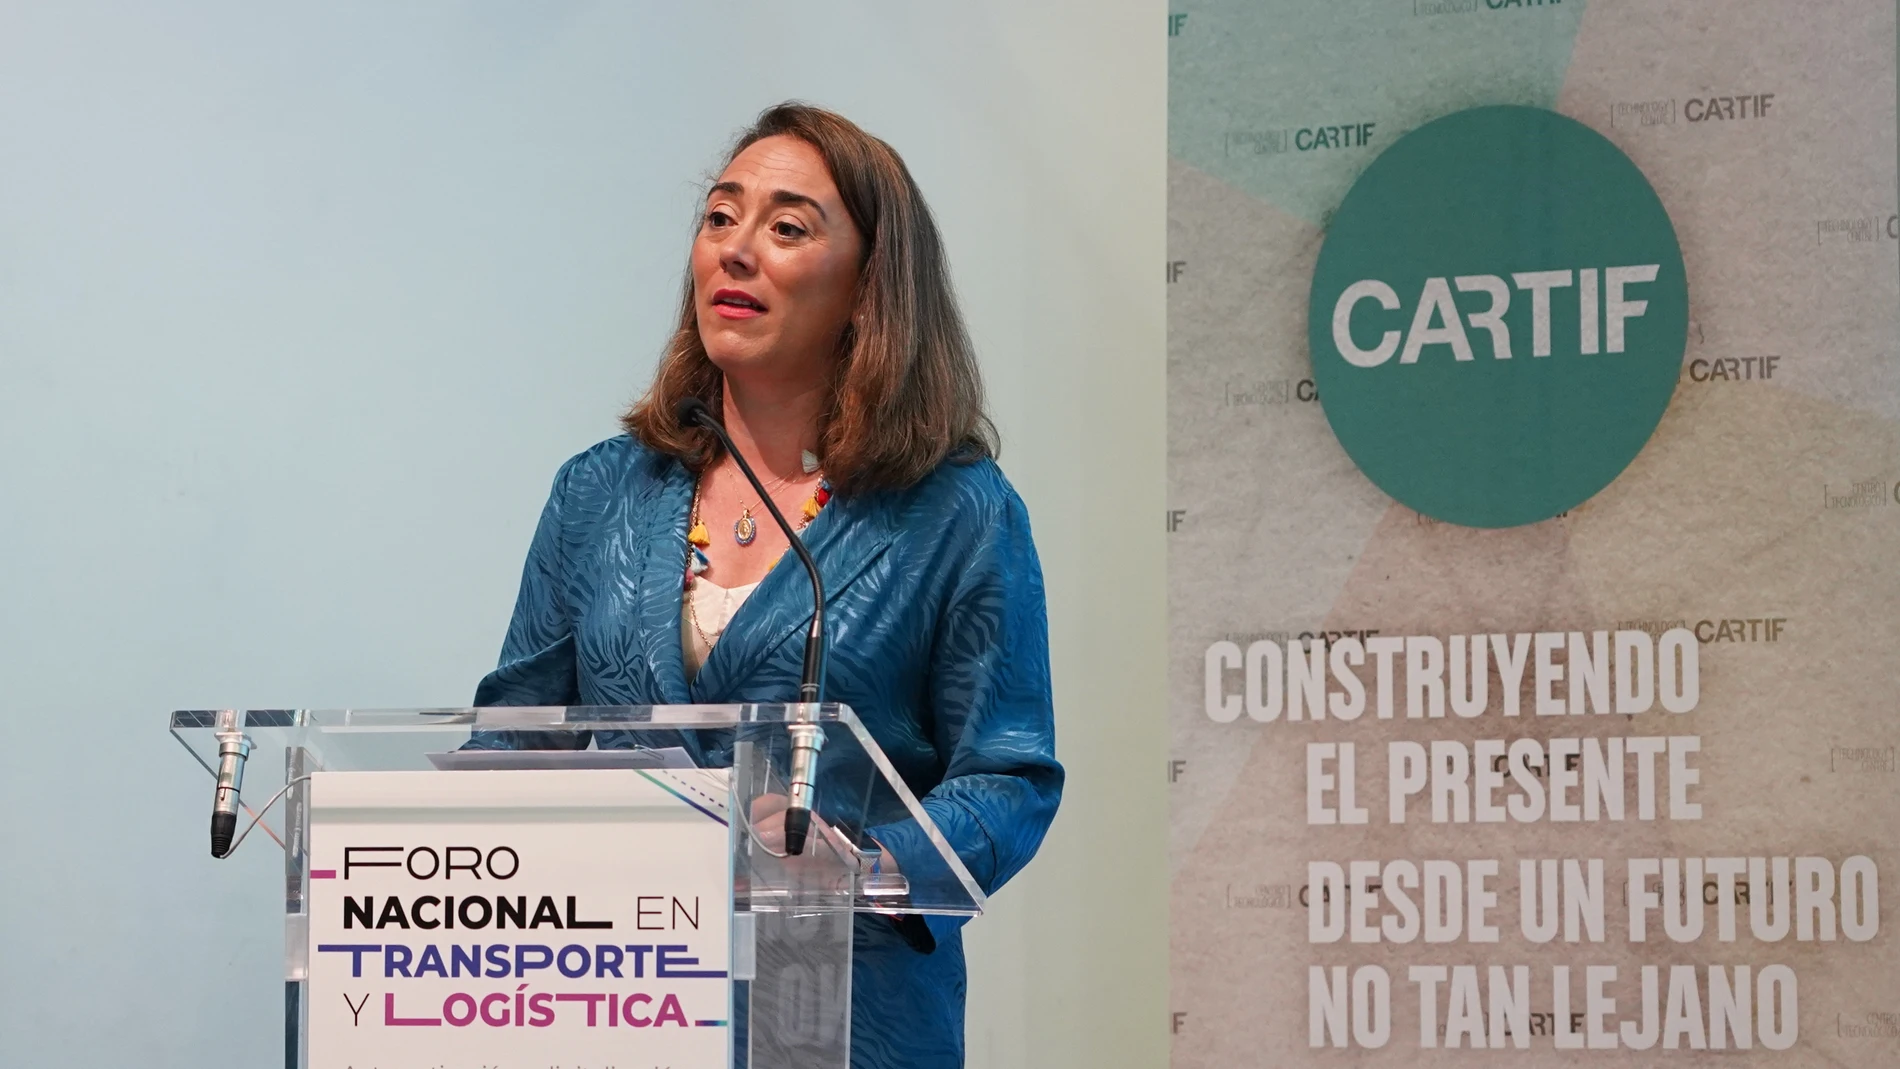 La consejera de Movilidad y Transformación Digital, María González Corral, participa en la apertura del Foro Nacional en Transporte y Logística organizado por CARTIF